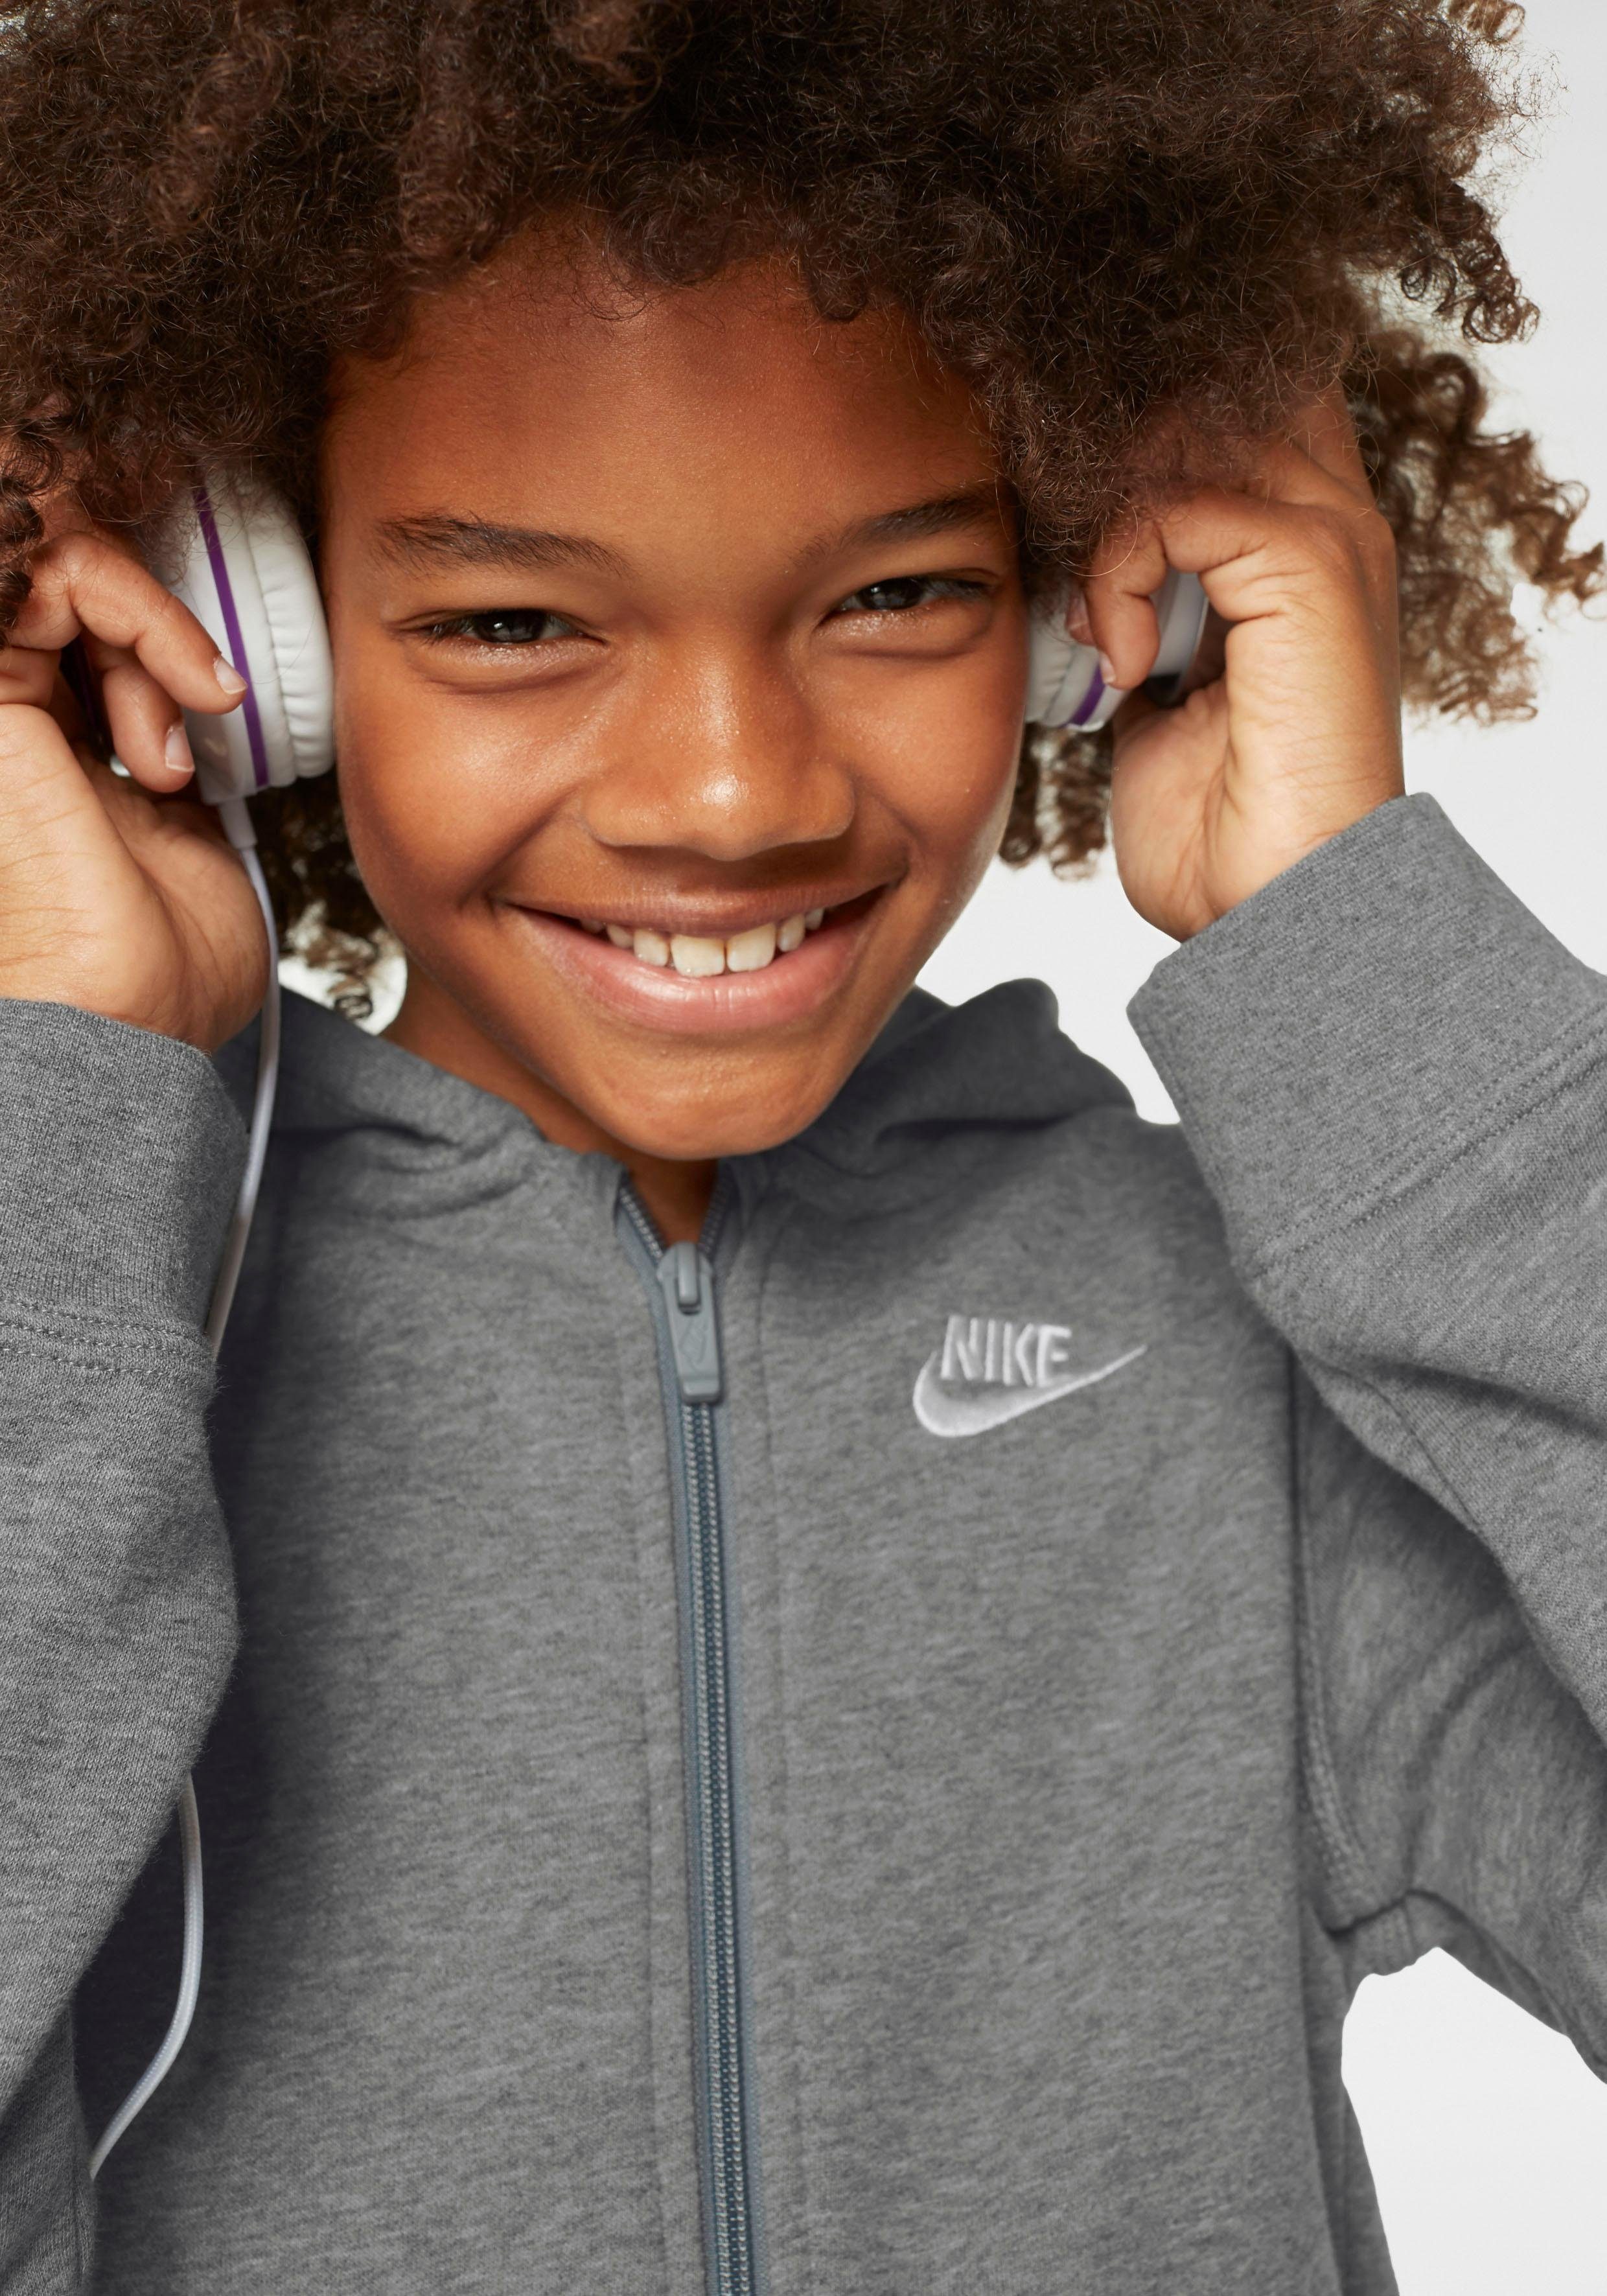 CLUB grau-meliert HOODIE Kinder Nike NSW Kapuzensweatjacke für - Sportswear FZ